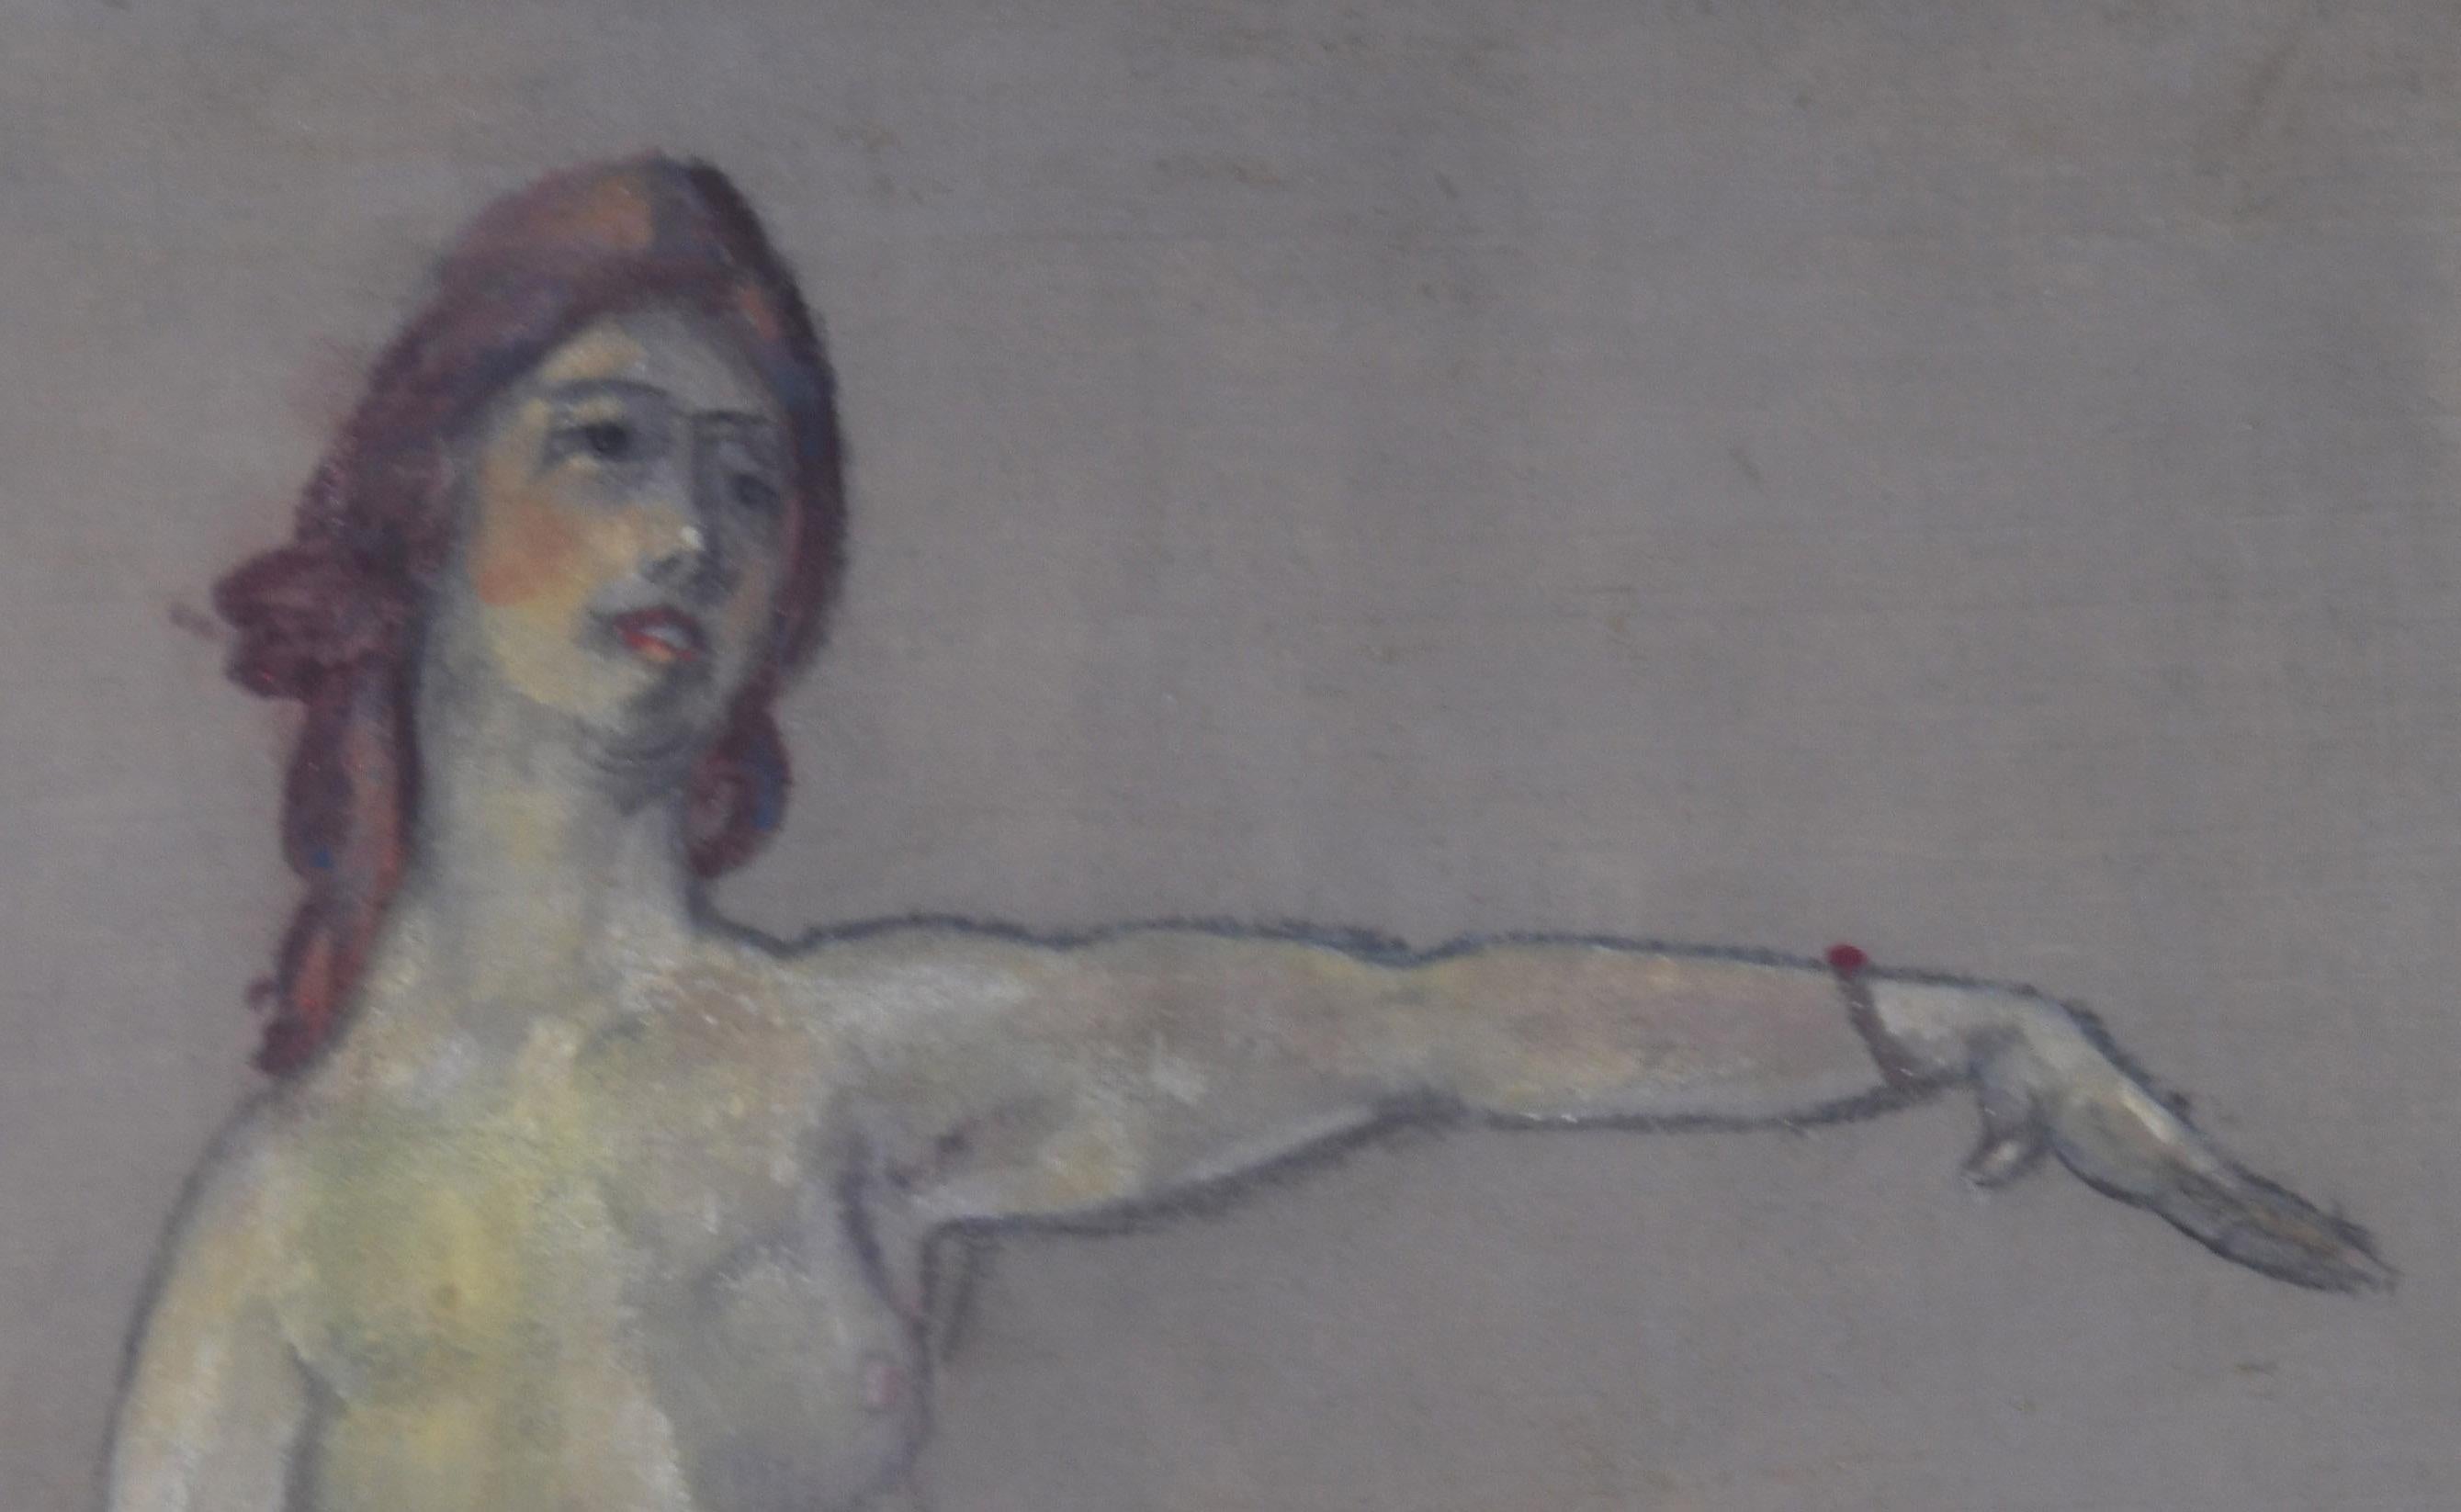 Femme nue debout
Huile sur toile, vers 1910
Signé en bas à gauche (voir photo)
Condition : Excellent
                  Présenté dans un cadre en feuille d'or 22K
Taille de la toile : 24 x 18 1/8 pouces
Taille du cadre : 30 x 24 pouces
Provenance :